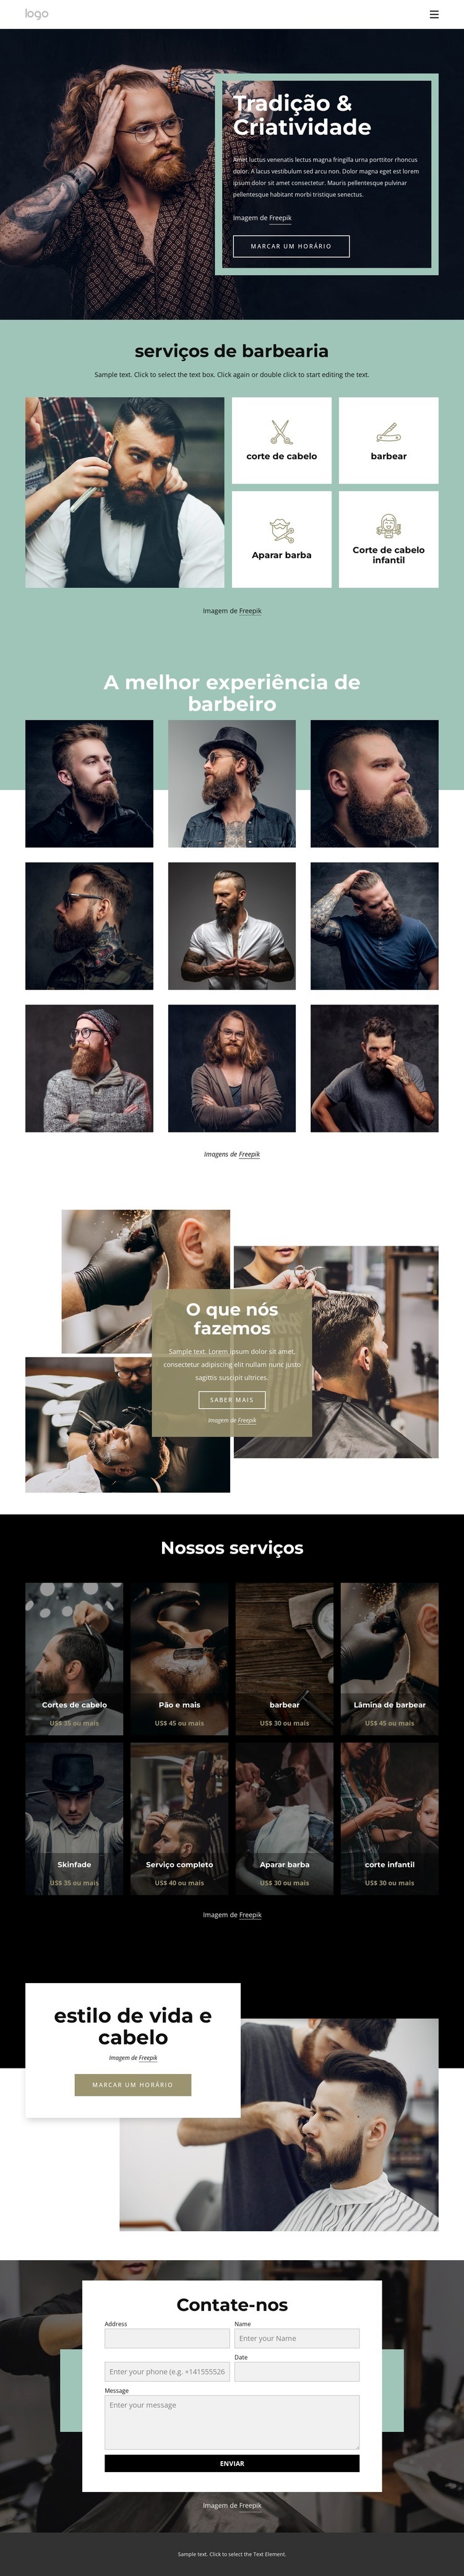 salão de barbeiro público Design do site